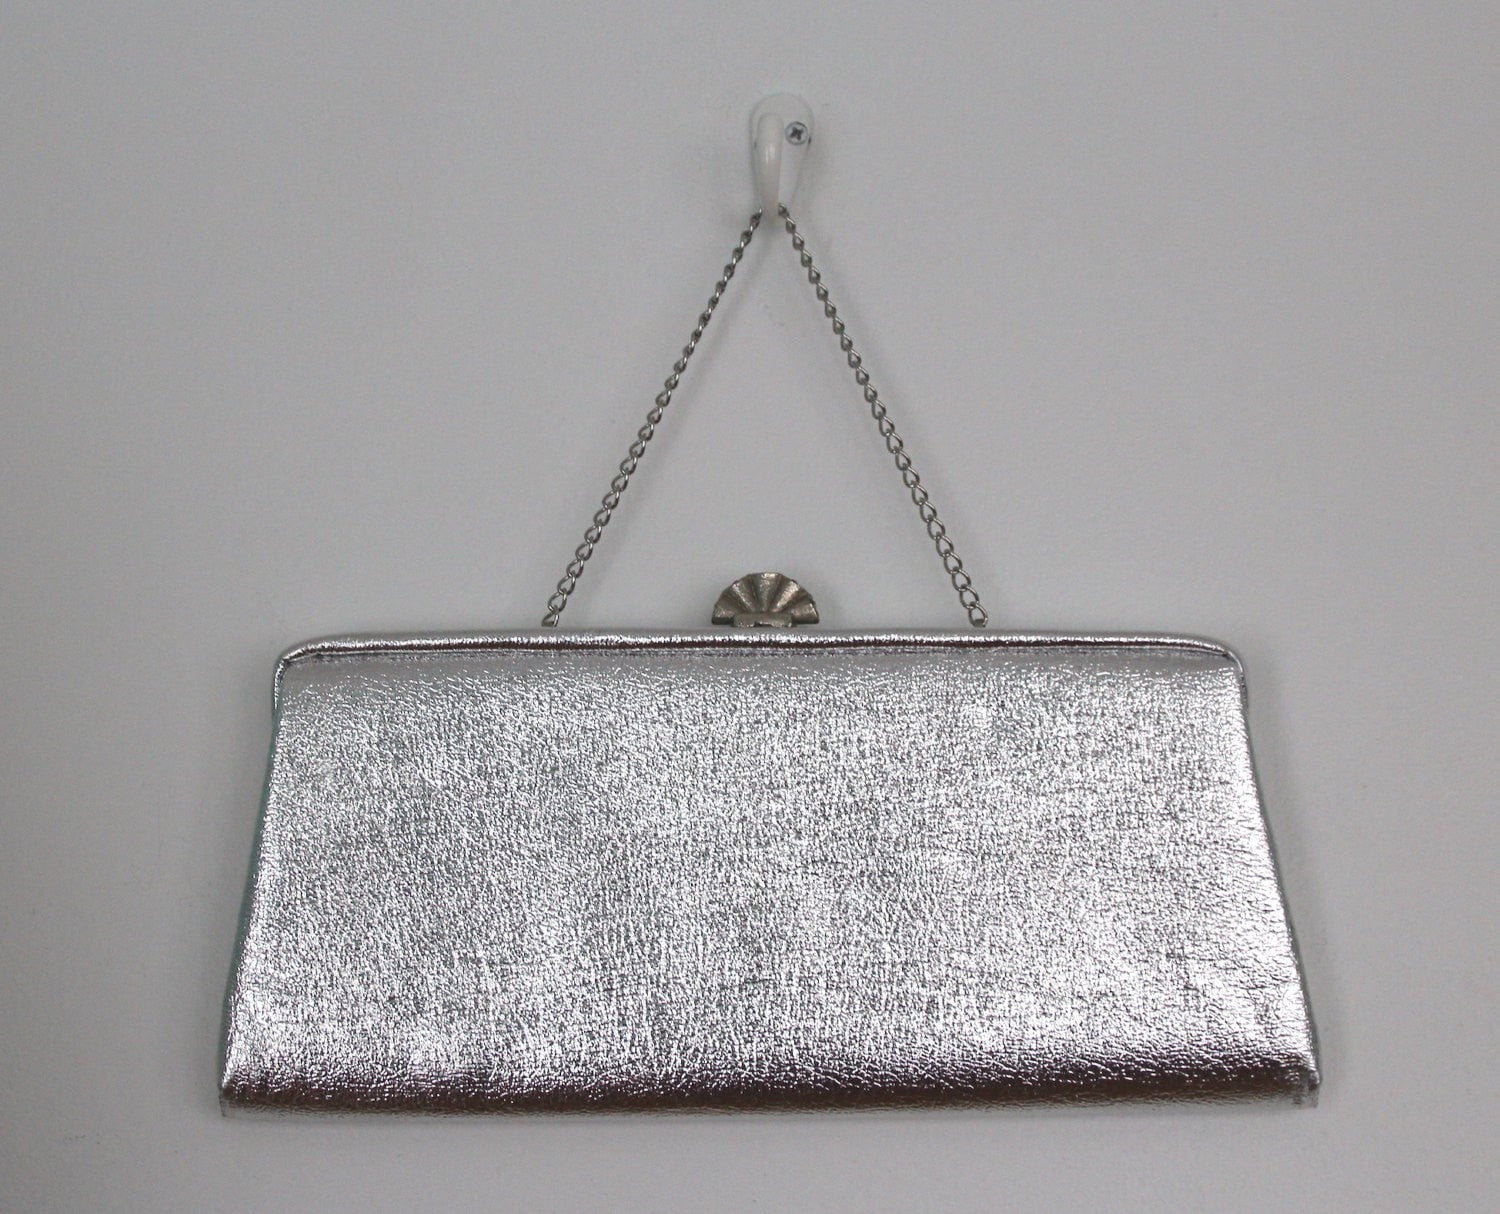 Vintage 1960s Handbag / Silver Formal Clutch Purse